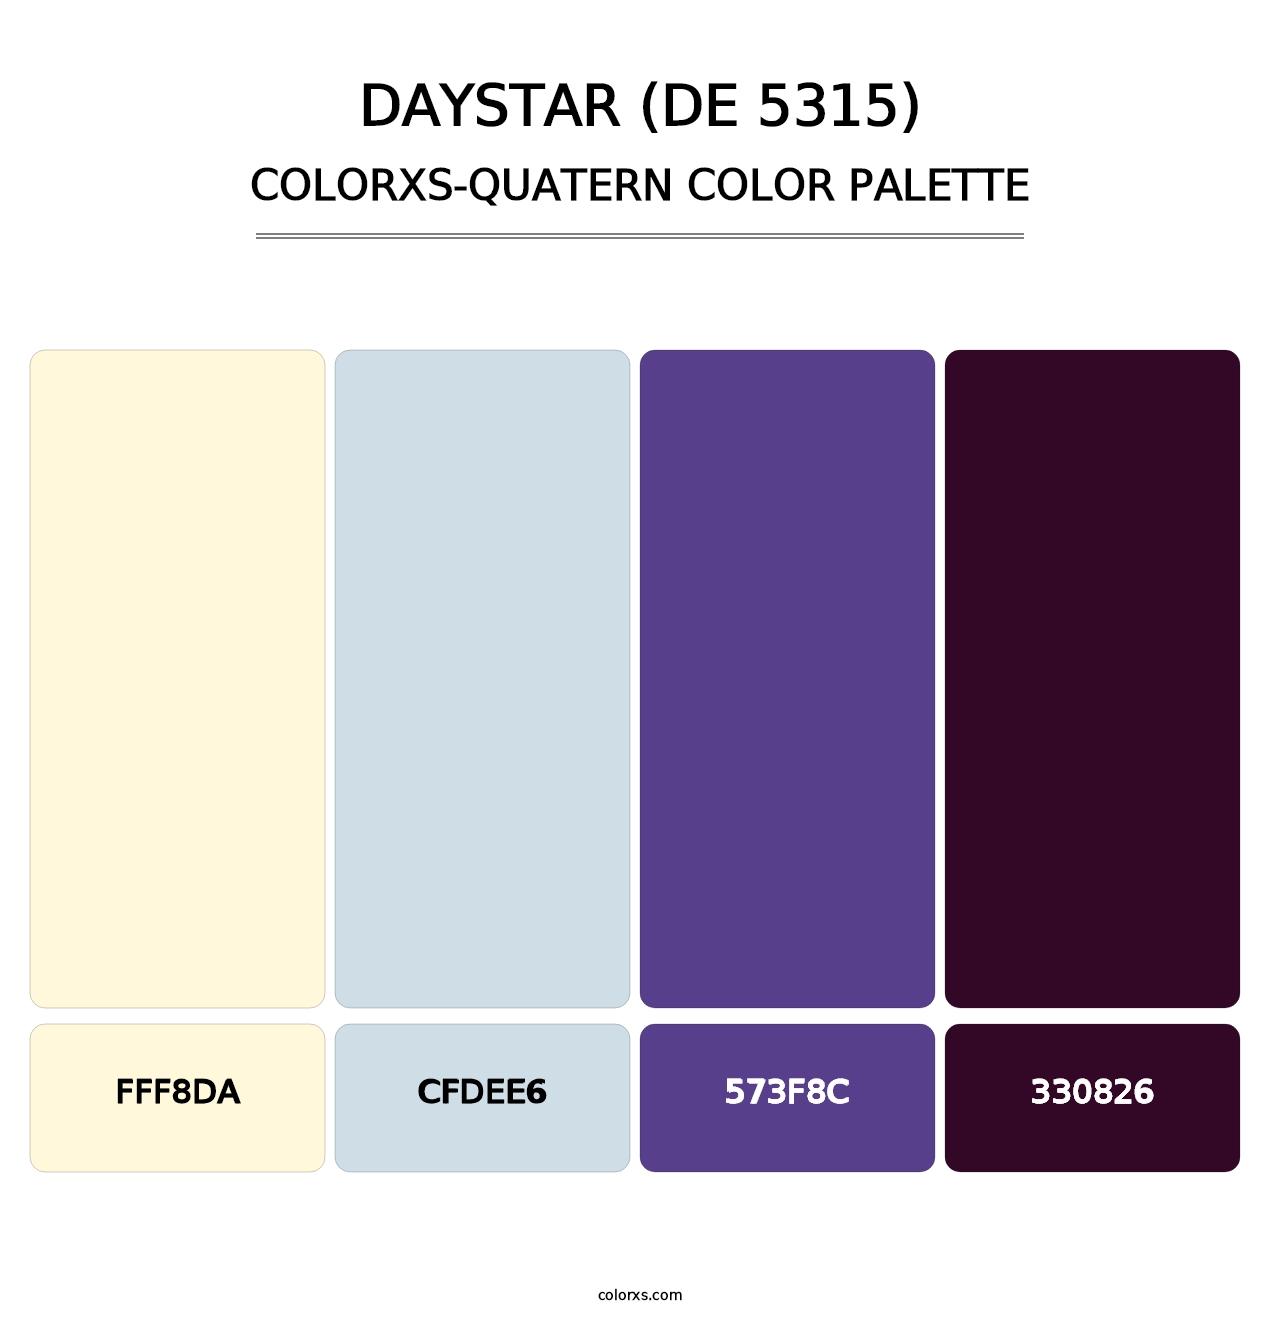 Daystar (DE 5315) - Colorxs Quatern Palette